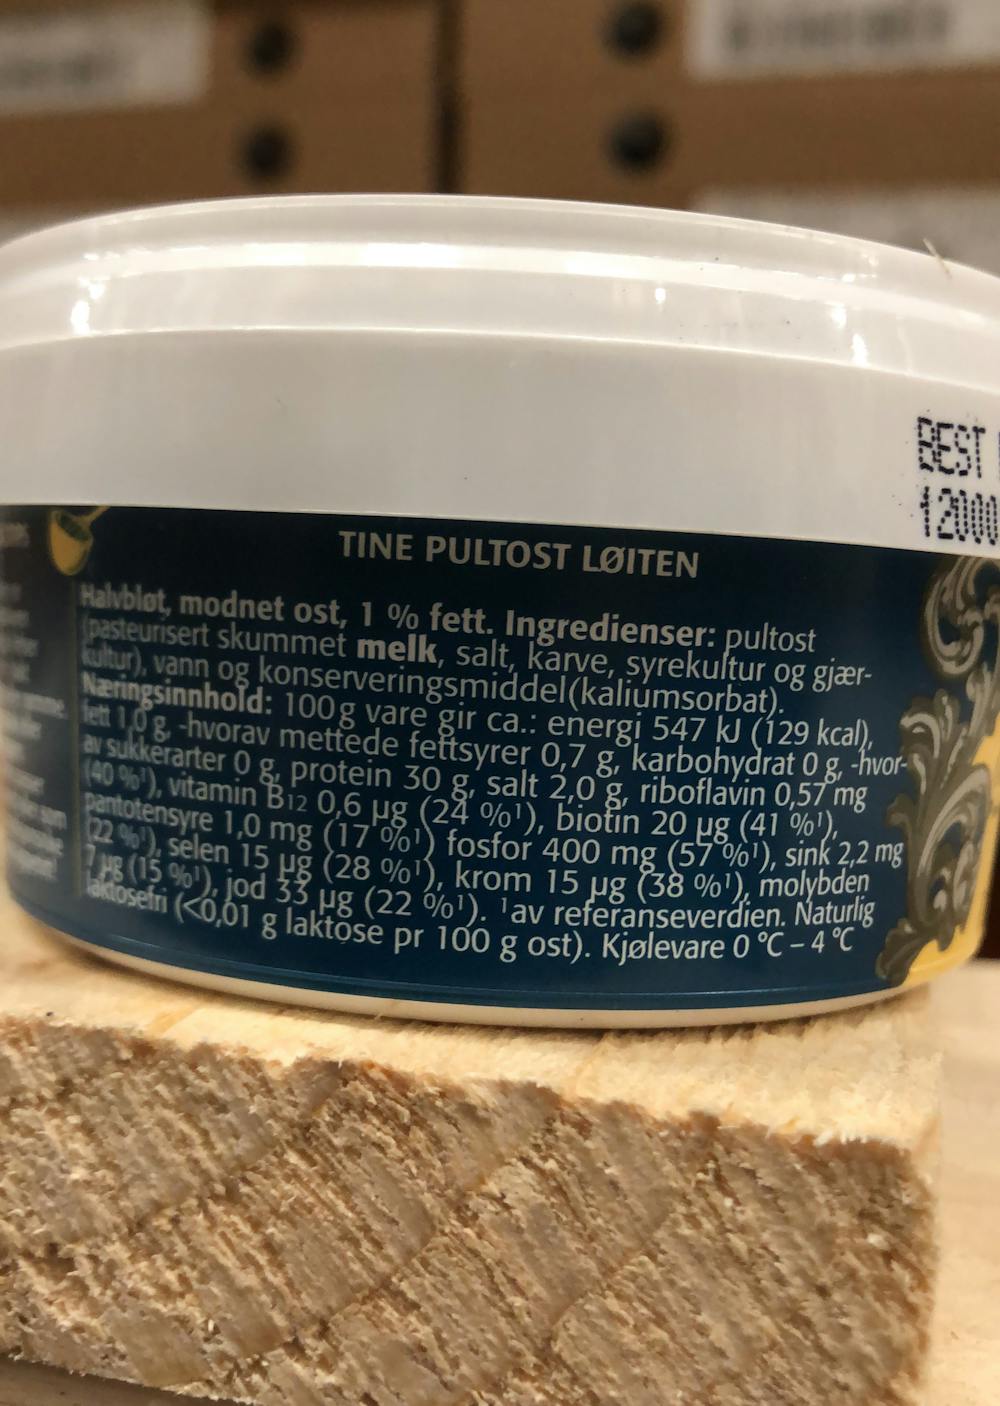 Ingredienslisten til Tine Pultost løiten